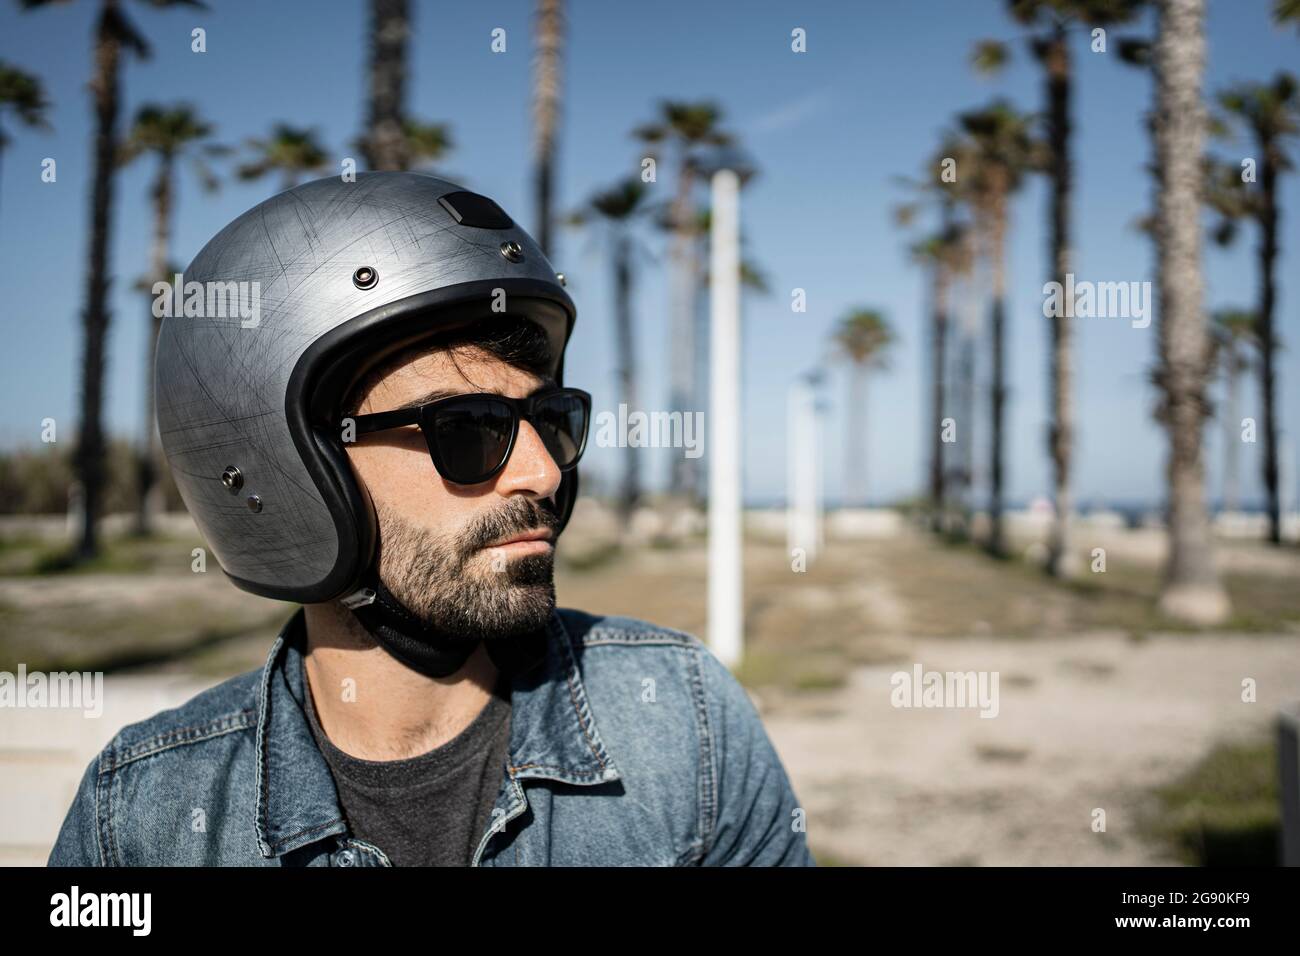 Schöner Mann mit Sonnenbrille und Helm an sonnigen Tagen Stockfotografie -  Alamy